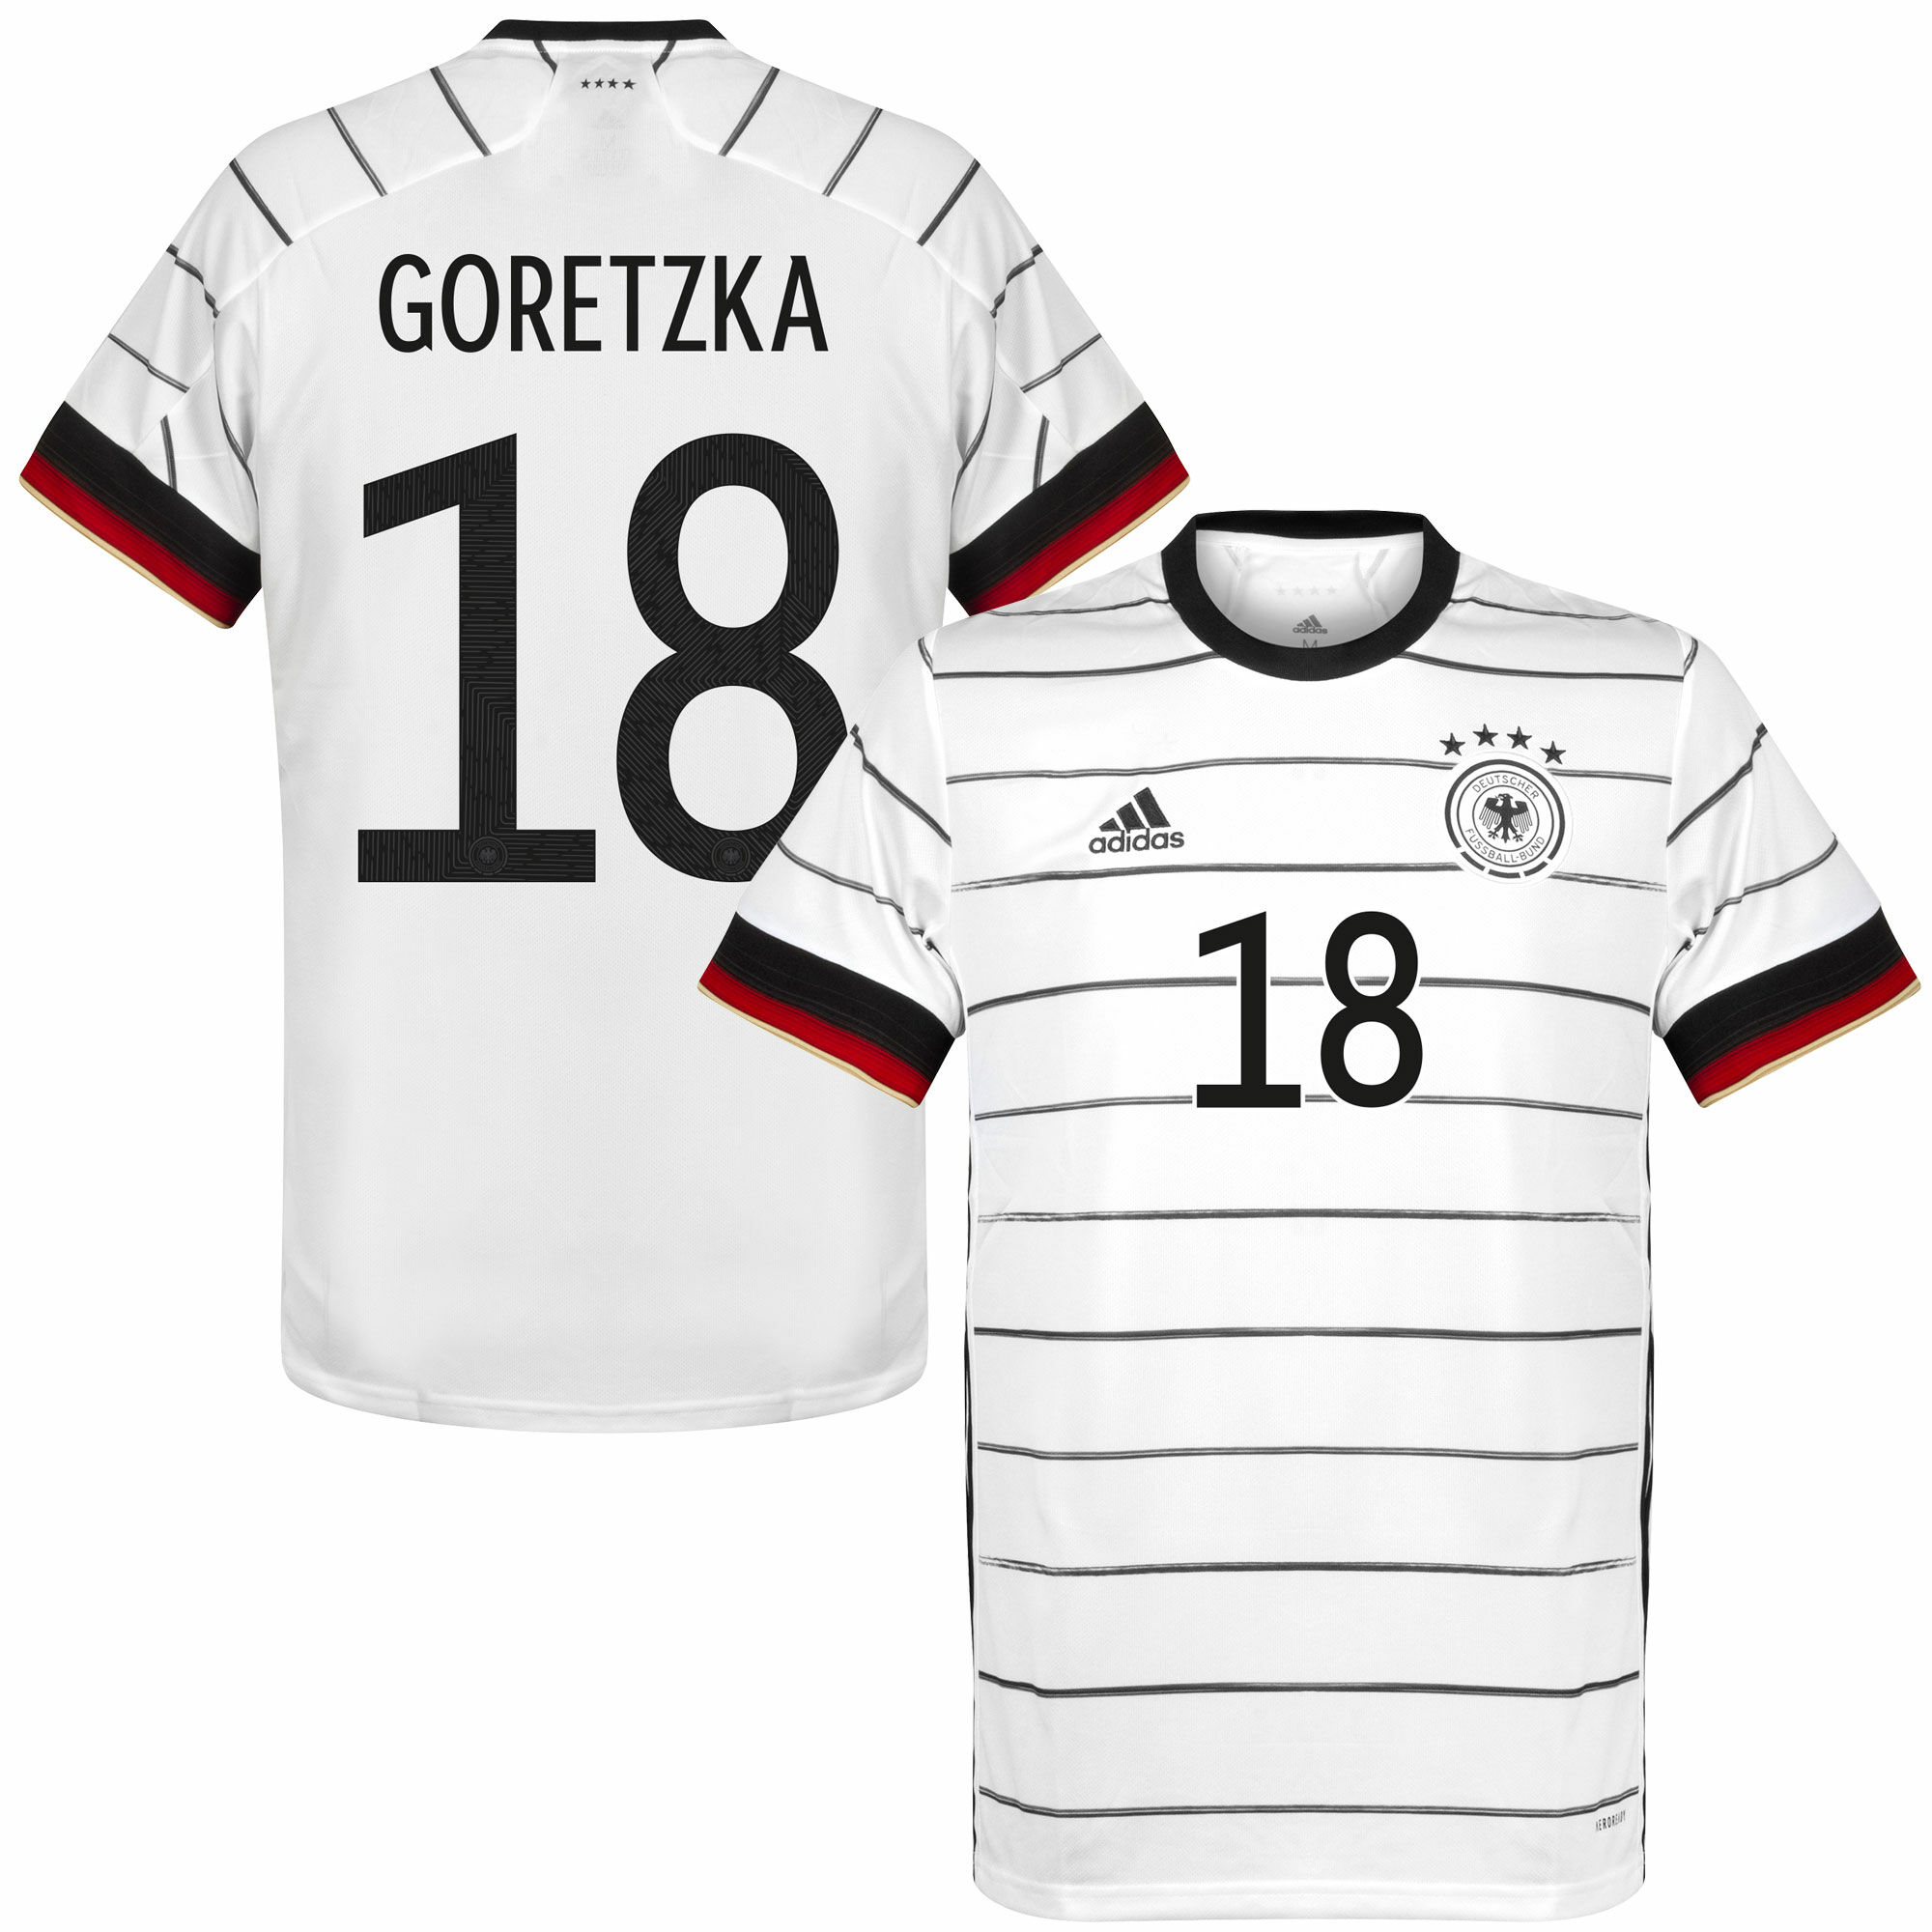 Německo - Dres fotbalový dětský - číslo 18, bílý, sezóna 2020/21, domácí, Leon Goretzka